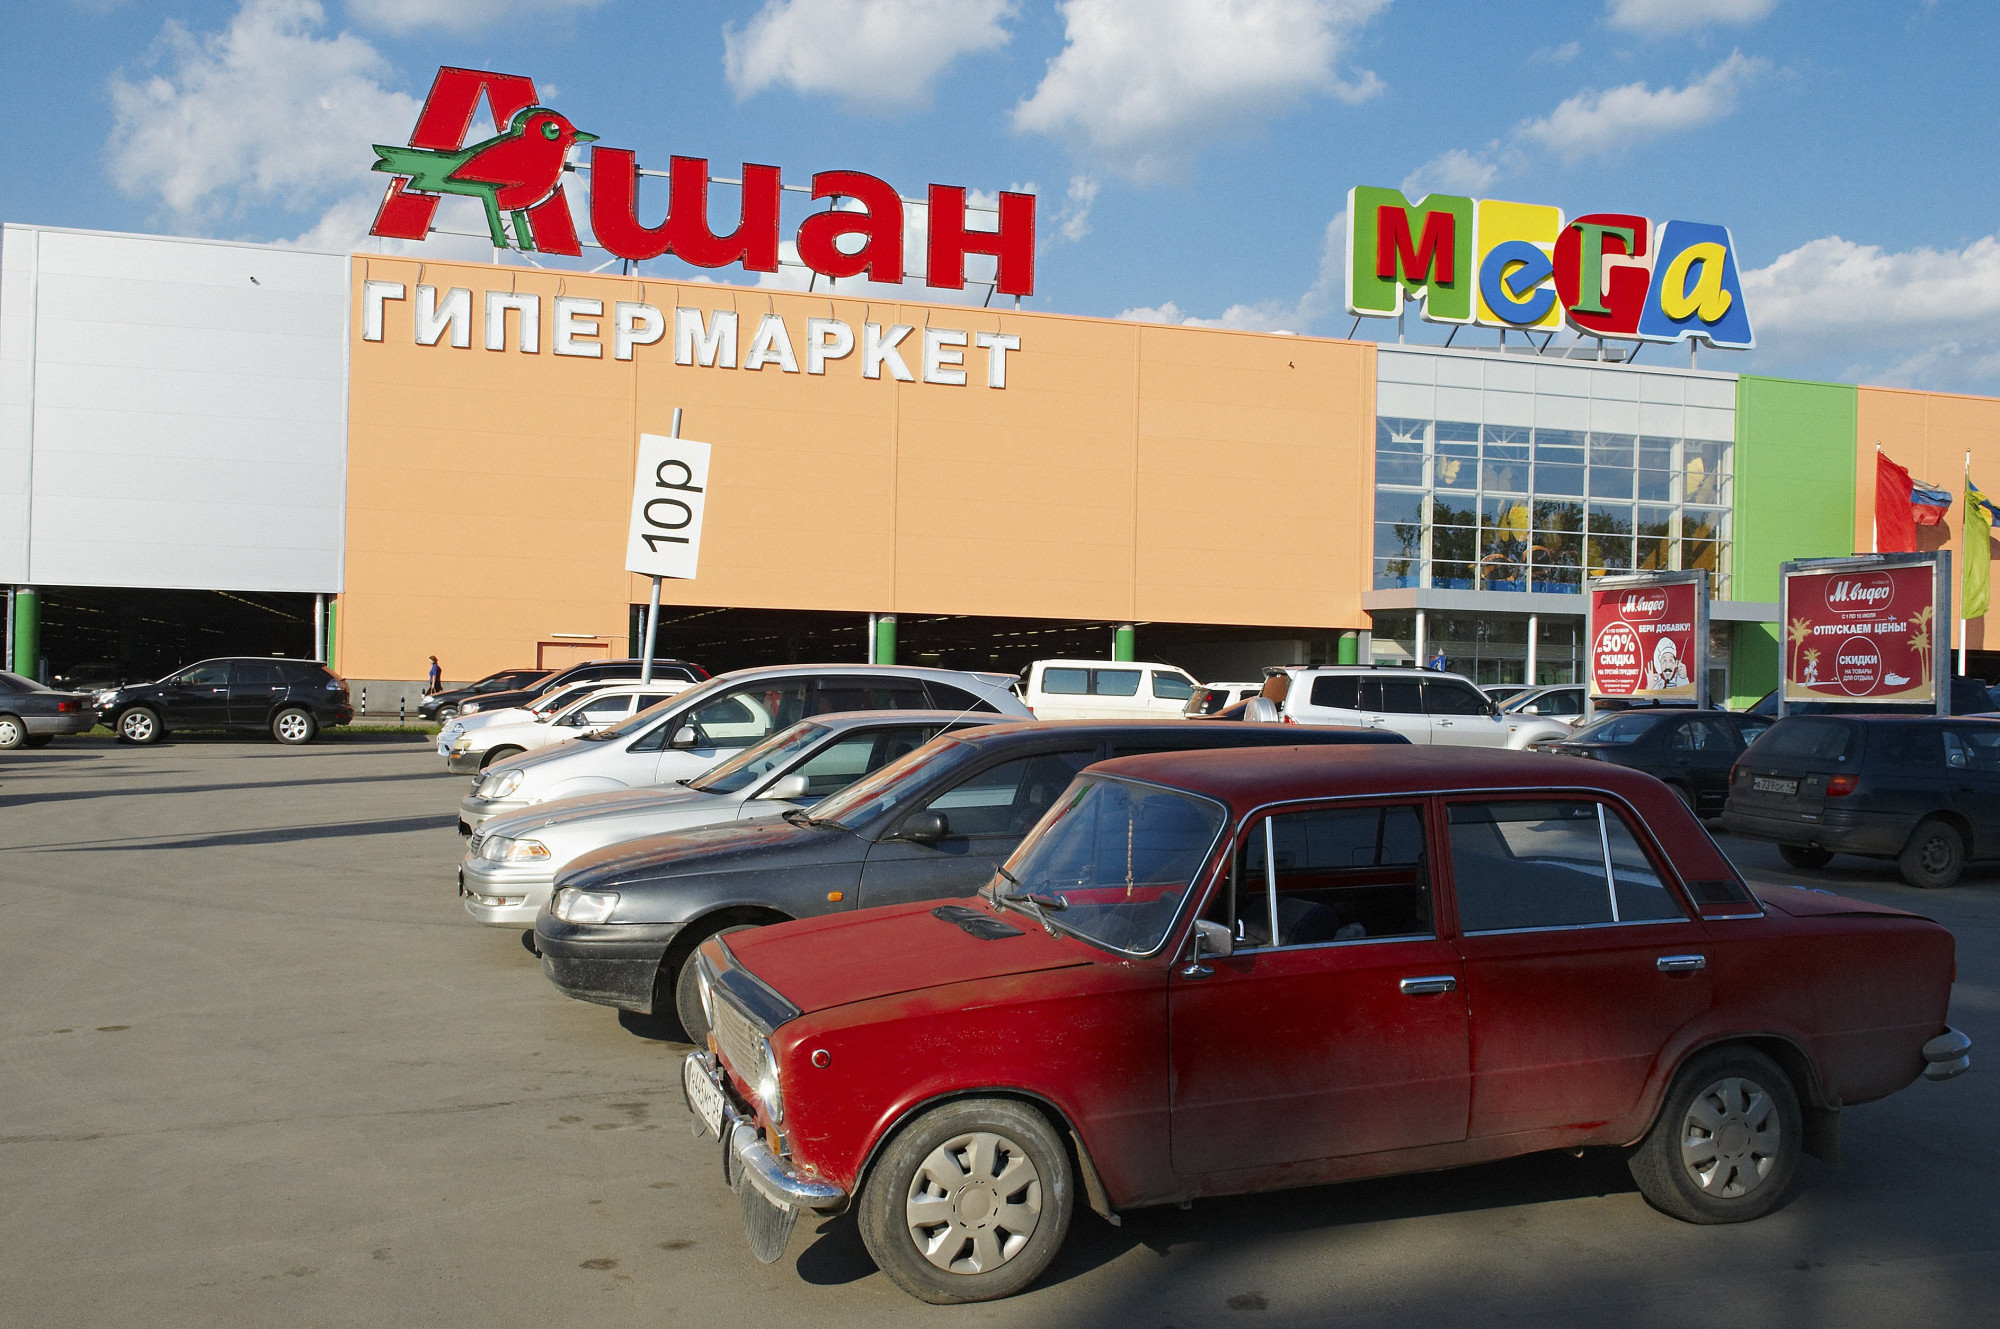 Háborús szponzornak minősítették Ukrajnában az Auchant